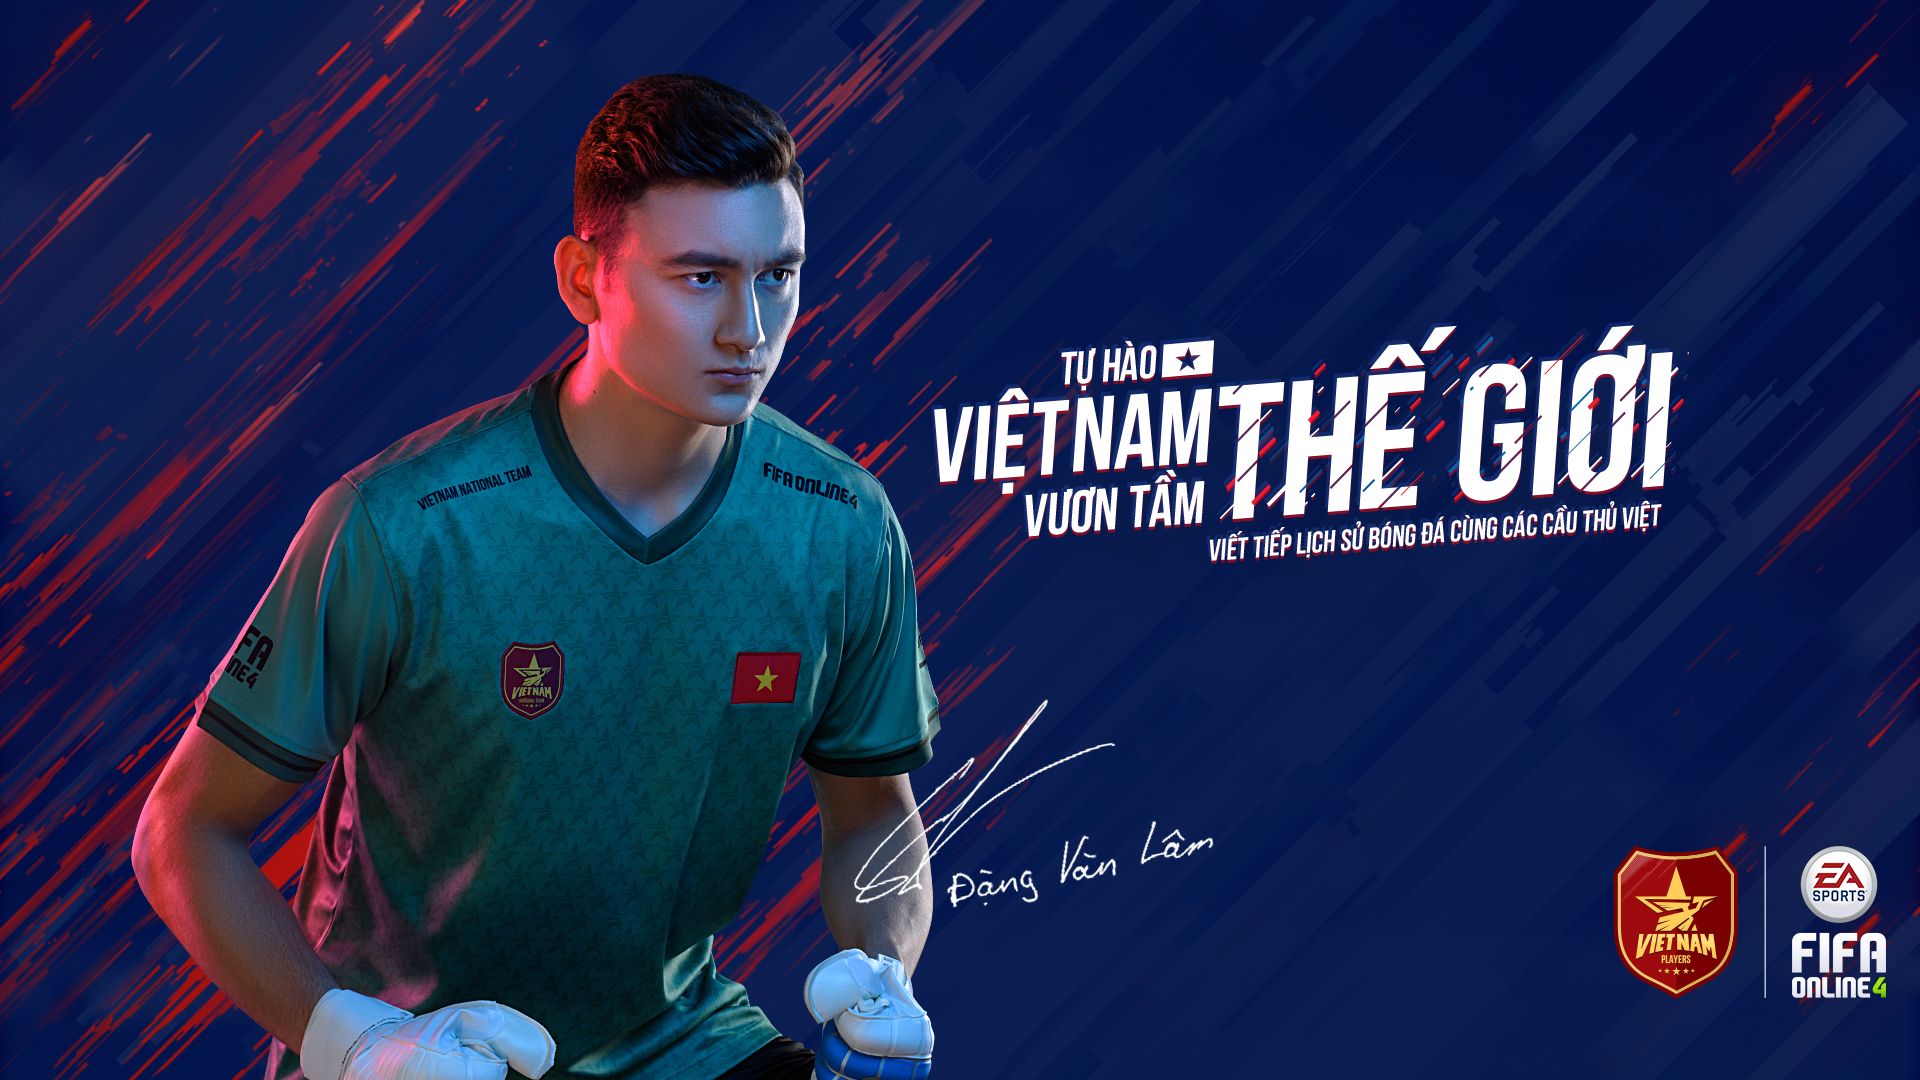 1920x1080 Vietnam, Vietnam Football, FIFA Online 4 Vietnam, Dang Van Lam